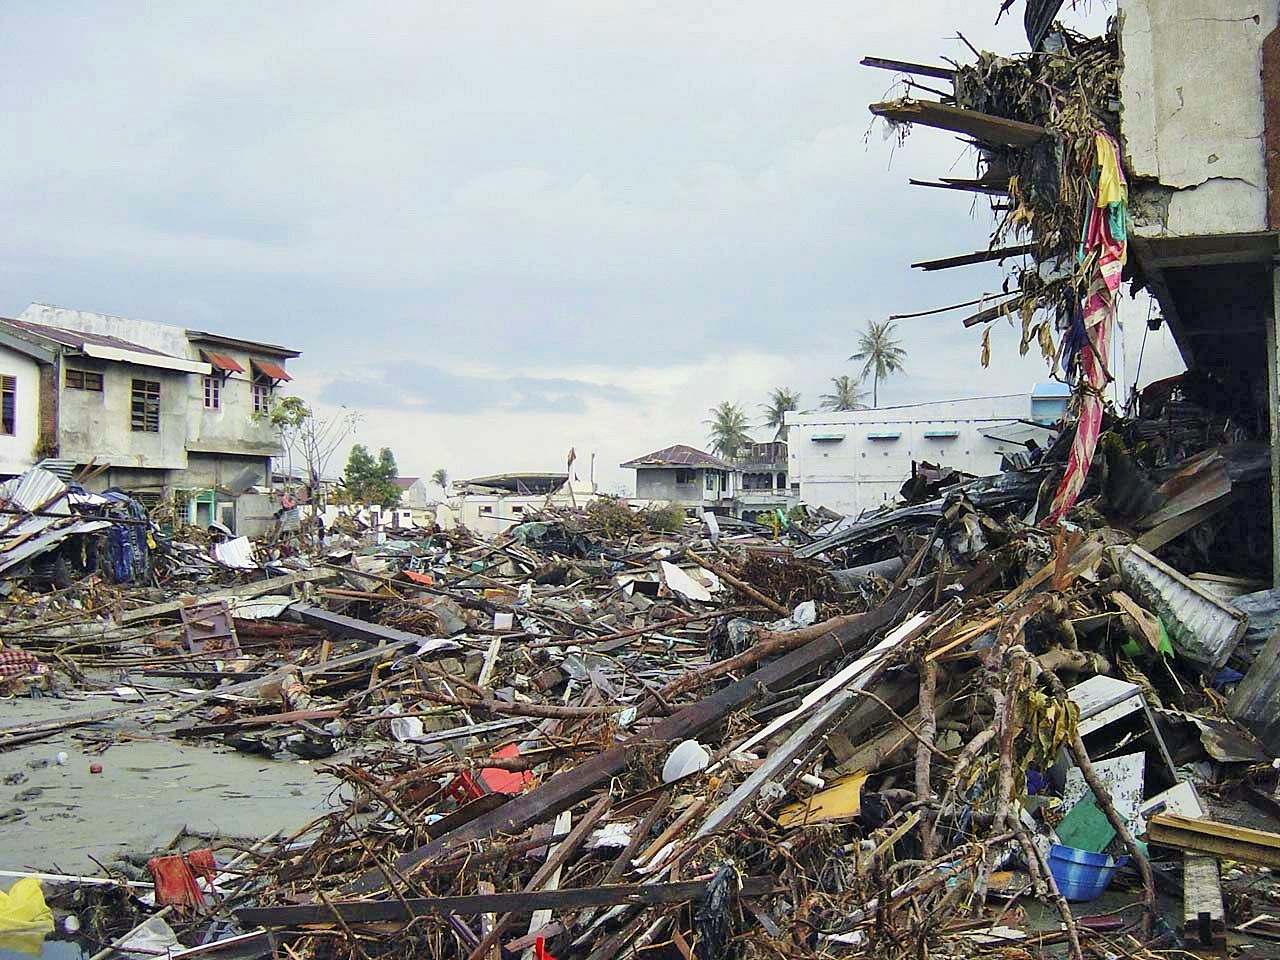 26. Dezember 2004: Ein Erdbeben der Stärke 9,1 im indischen Ozean löst einen Tsunami aus. 230‘000 Menschen sterben. Das Bild stammt aus der indonesischen Provinz Aceh auf der Insel Sumatra. Allein in Indonesien gibt es mehr als 165'000 Todesopfer. Fast zwei Millionen Menschen rund um den indischen Ozean werden obdachlos. Es ist das drittstärkste je registrierte Beben. 